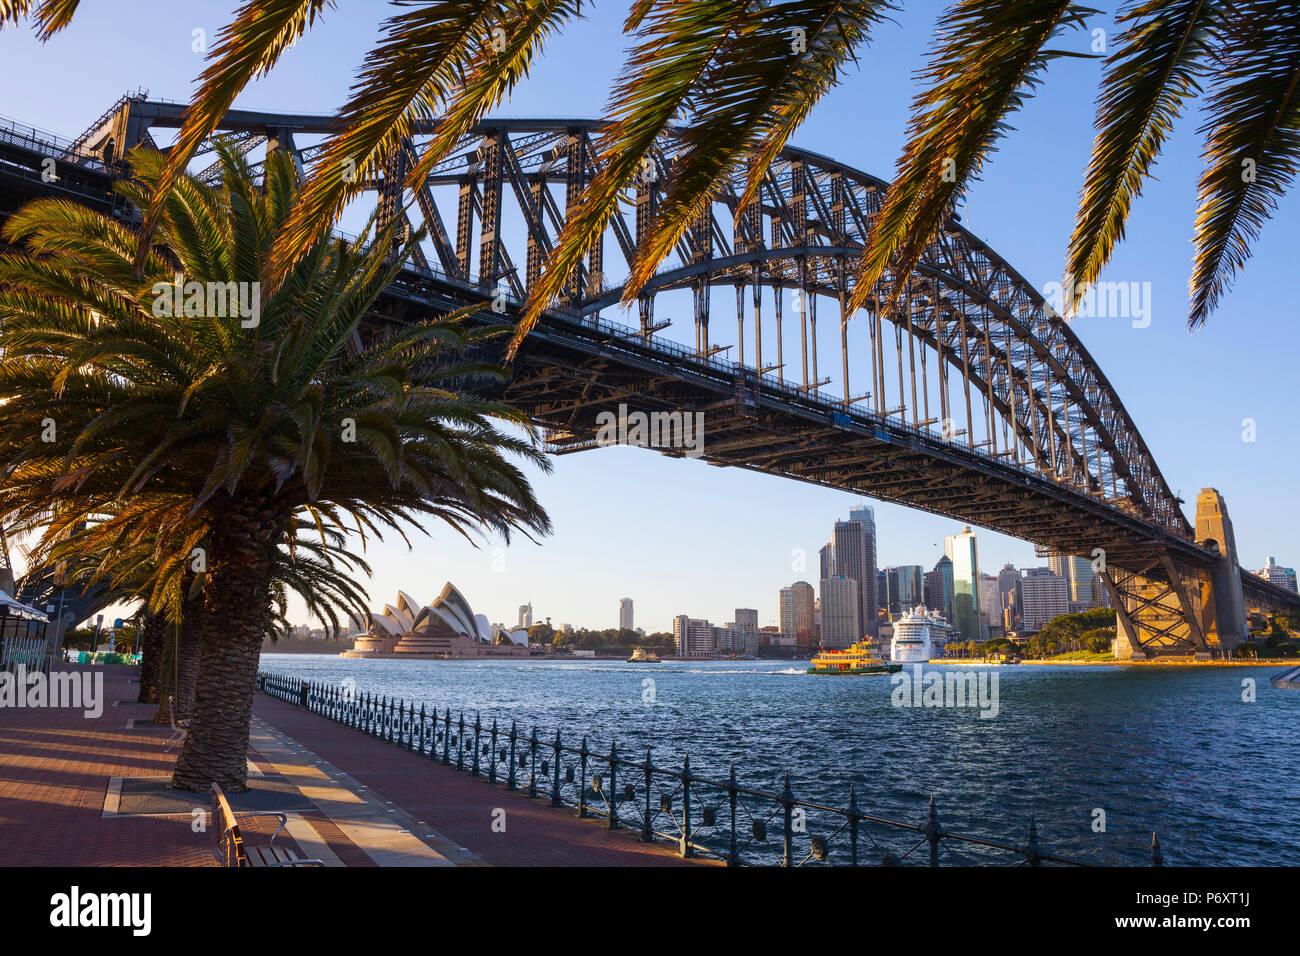 Le Harbour Bridge, Darling Harbour, Sydney, New South Wales, Australia Banque D'Images